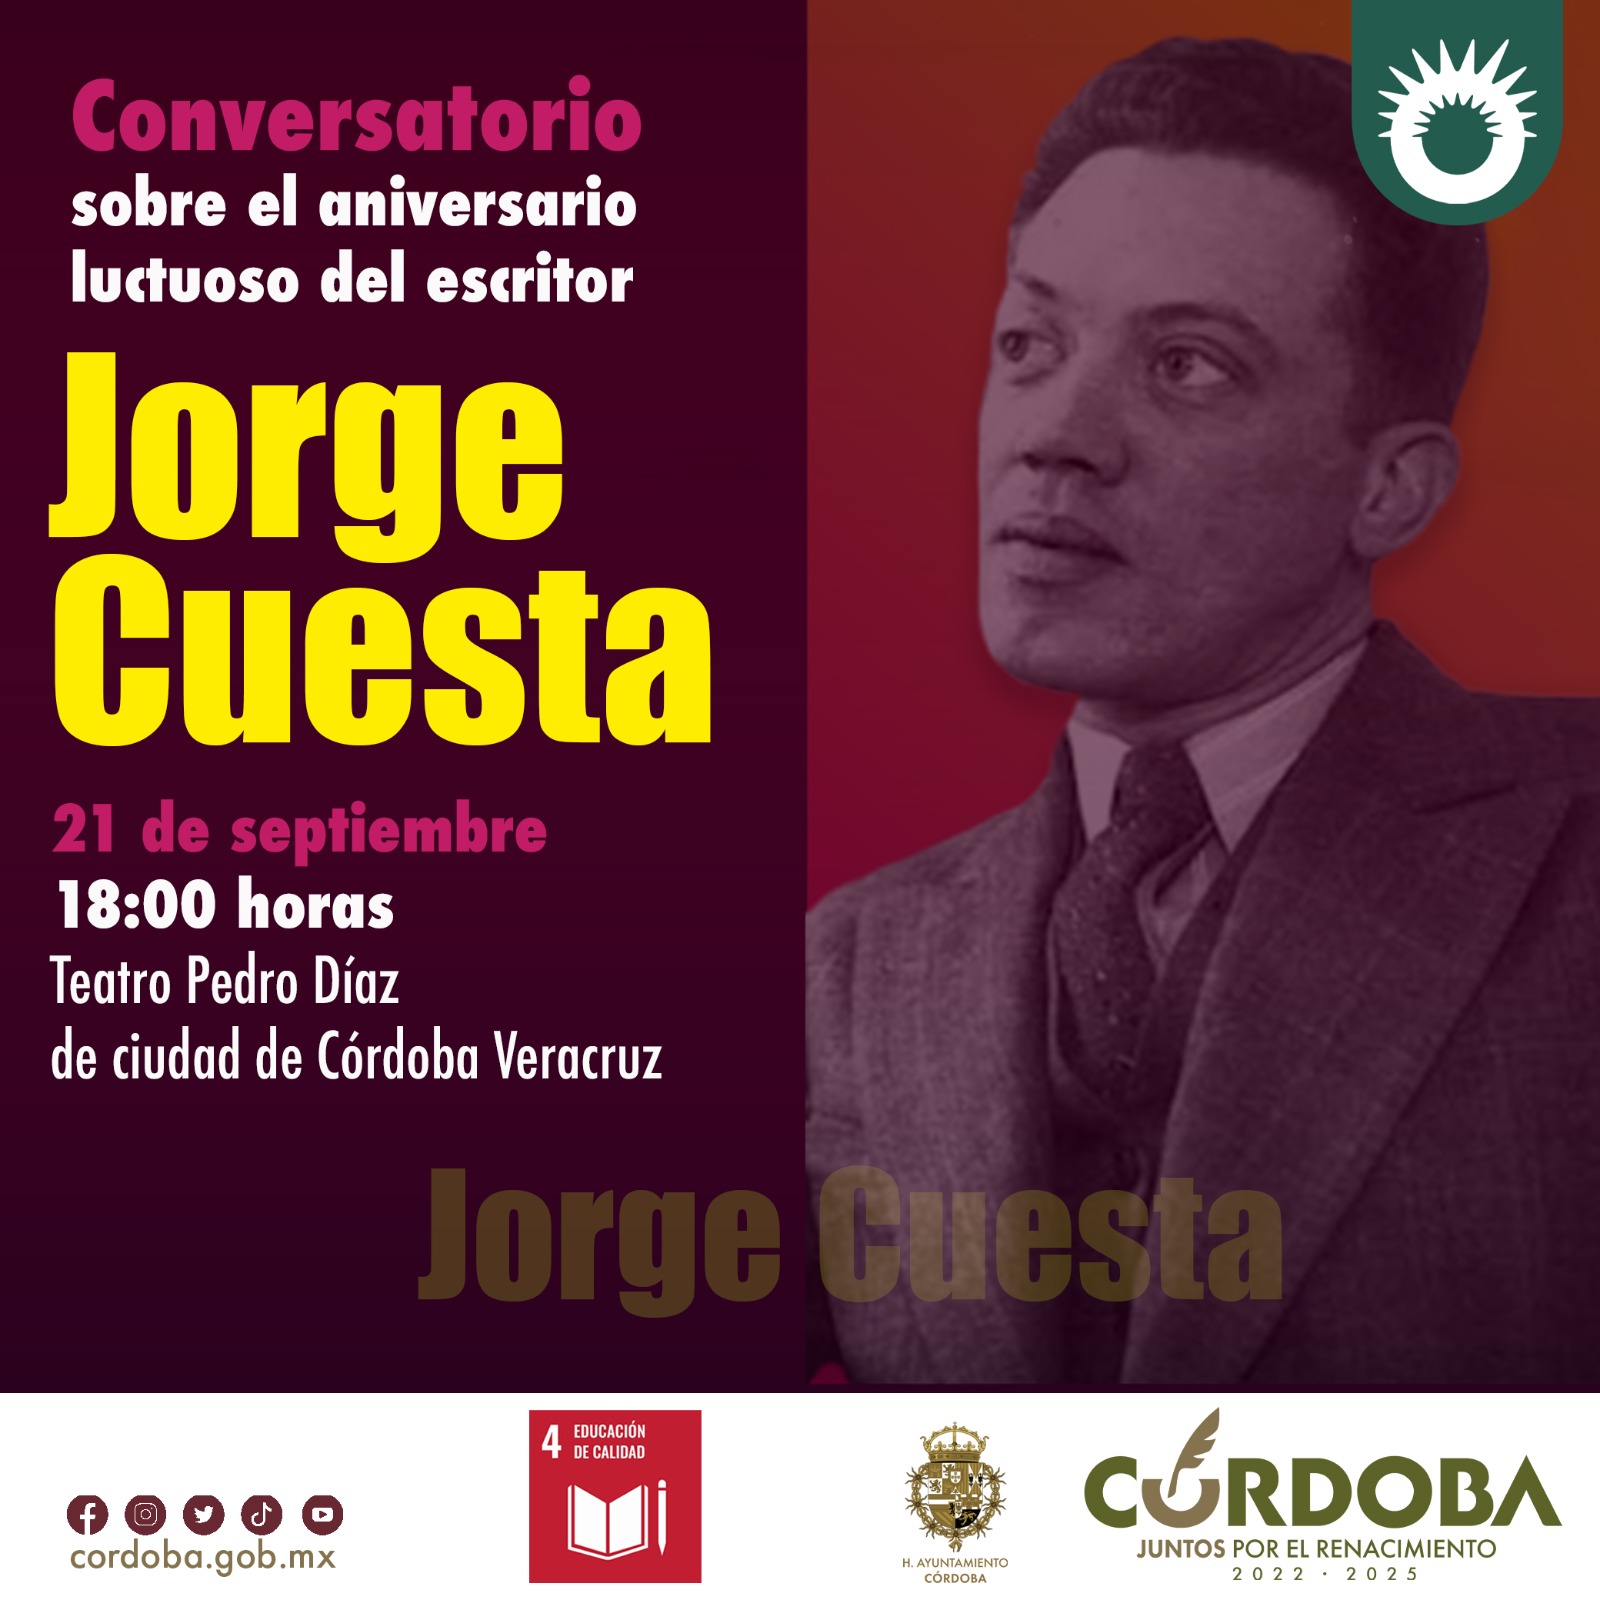 Conversatorio sobre el aniversario luctuoso del escritor Jorge Cuesta